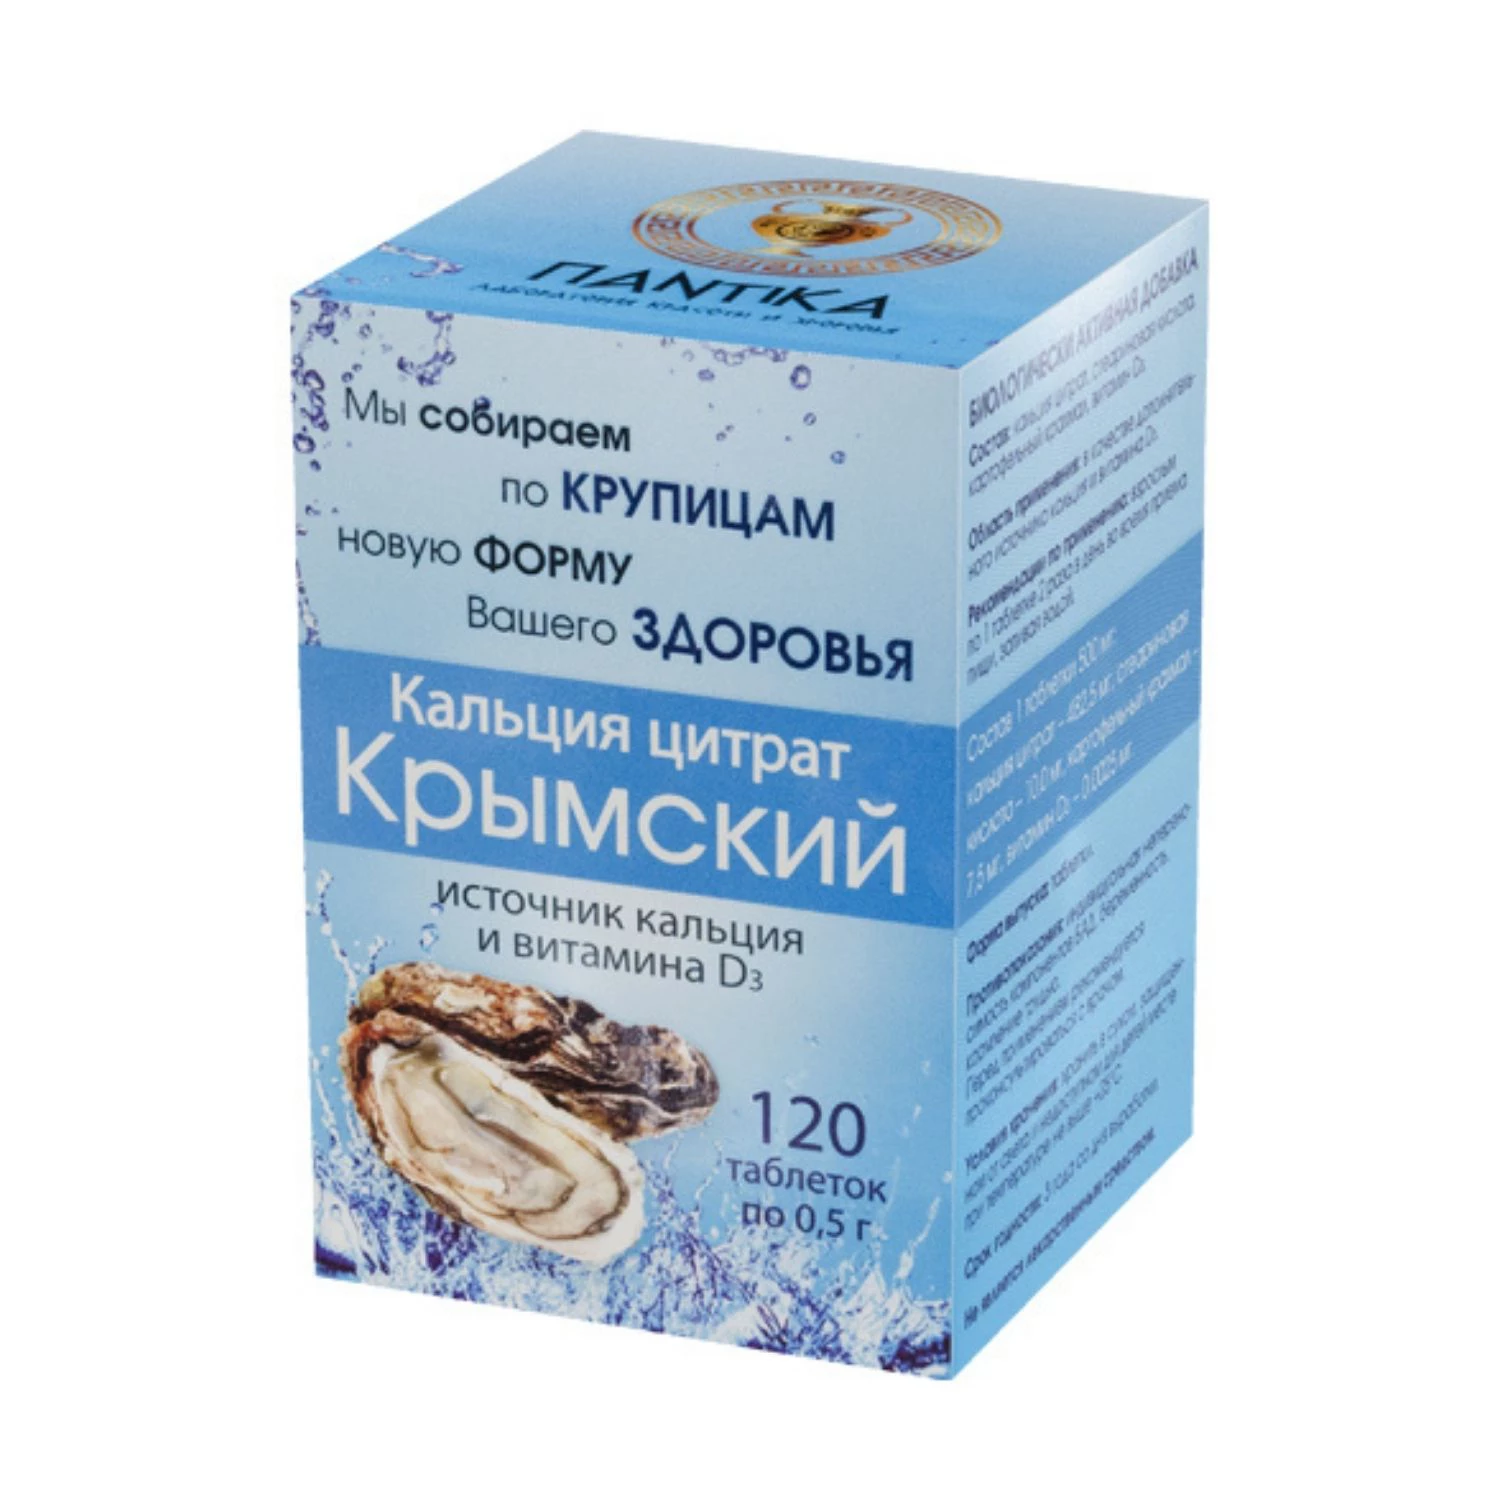 Кальция цитрат с витамином Д3 Крымский фото 1